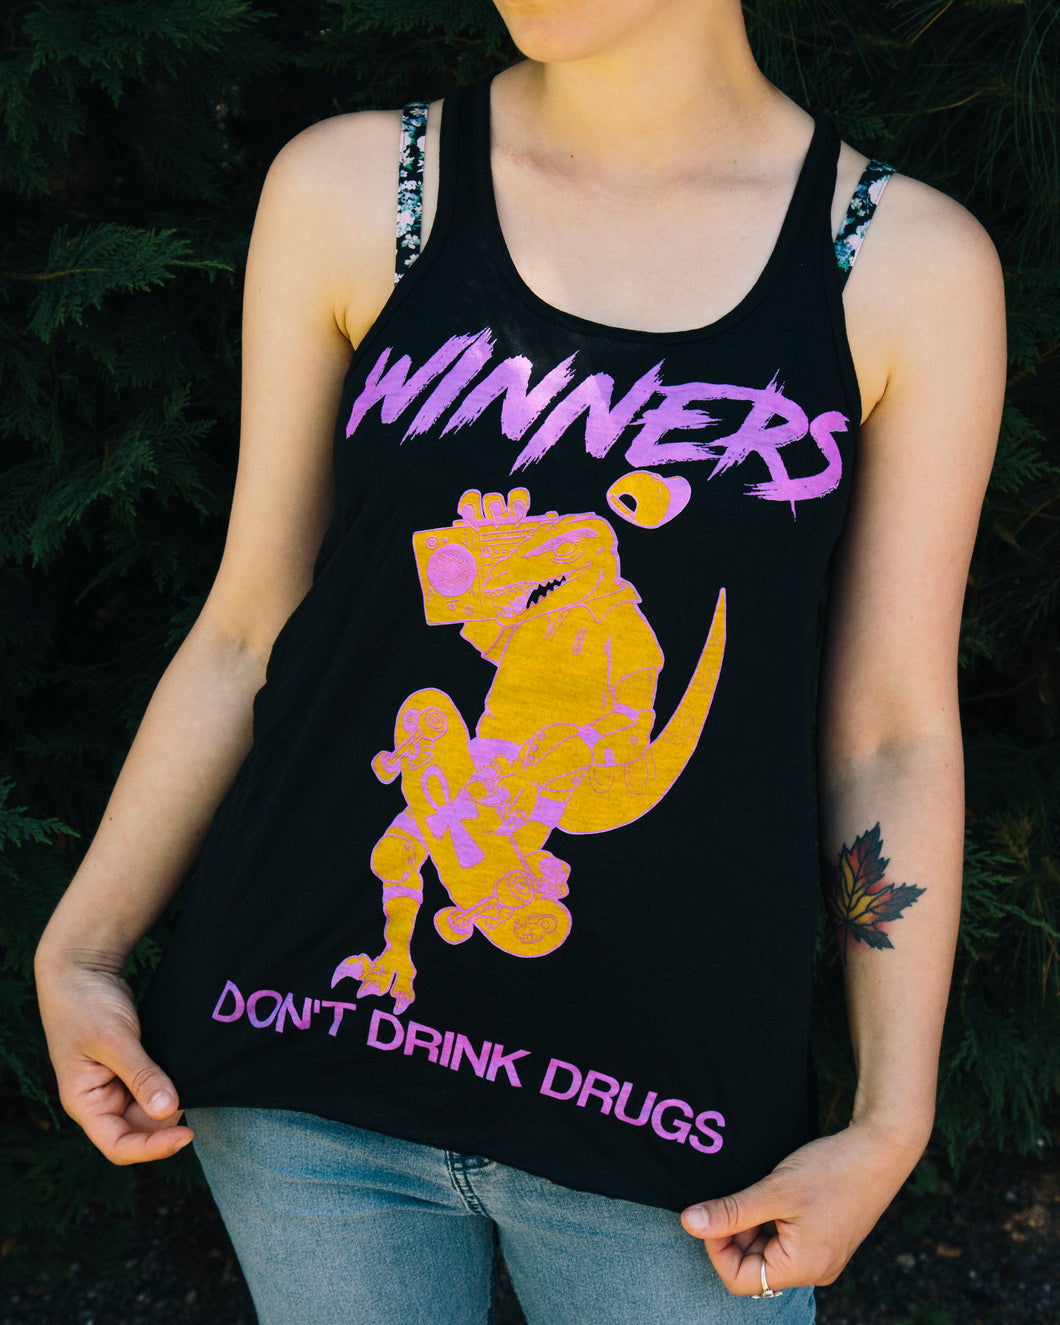 WINNERS DON'T DRINK DRUGS: BLACK TANK [LADIES]